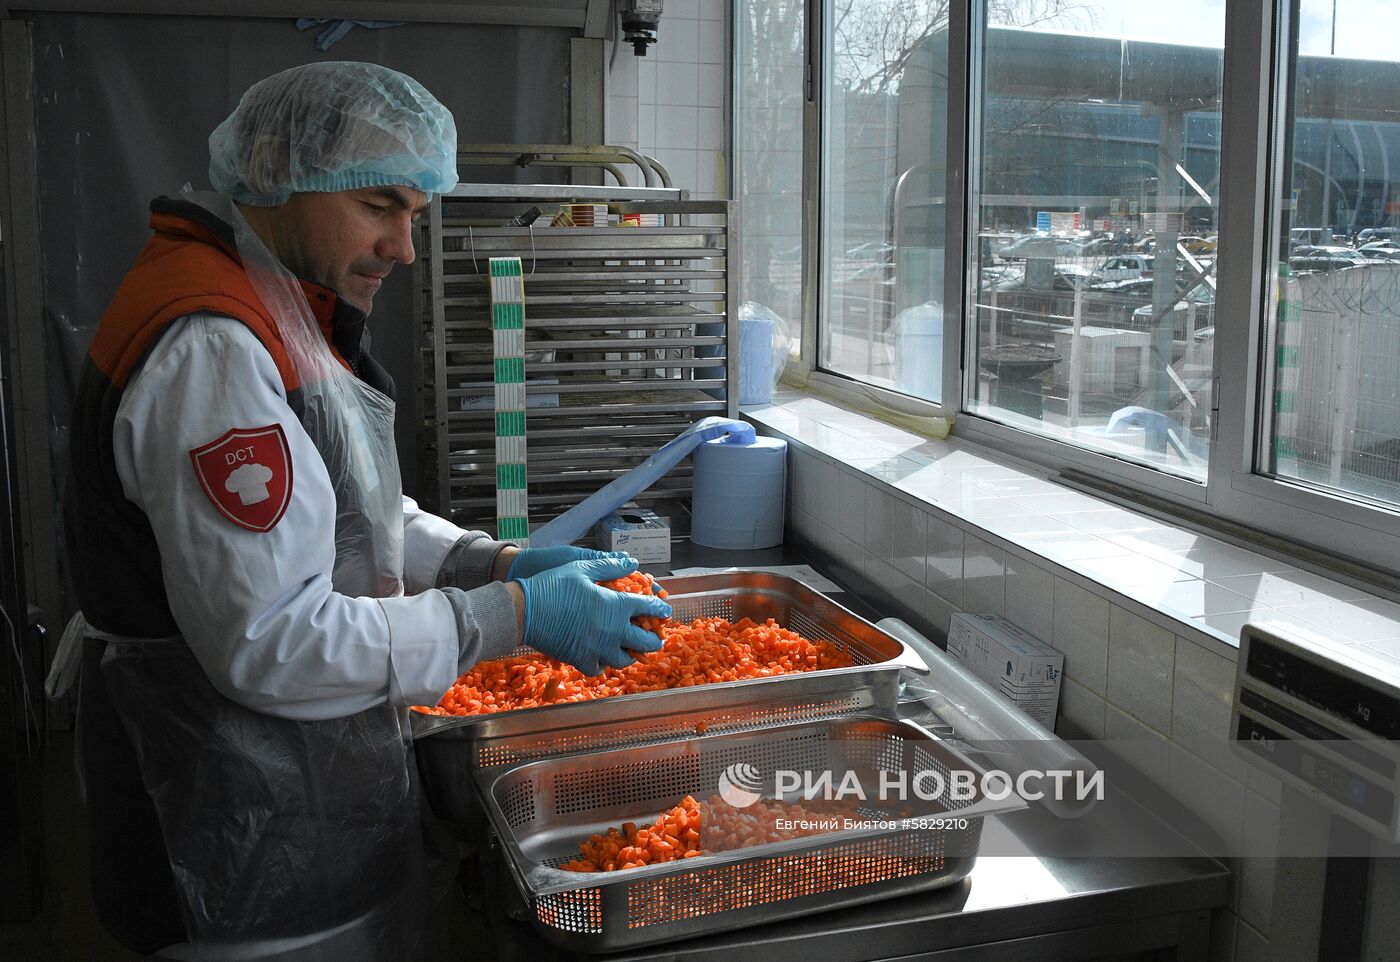 Фабрика бортового питания аэропорта Домодедово 